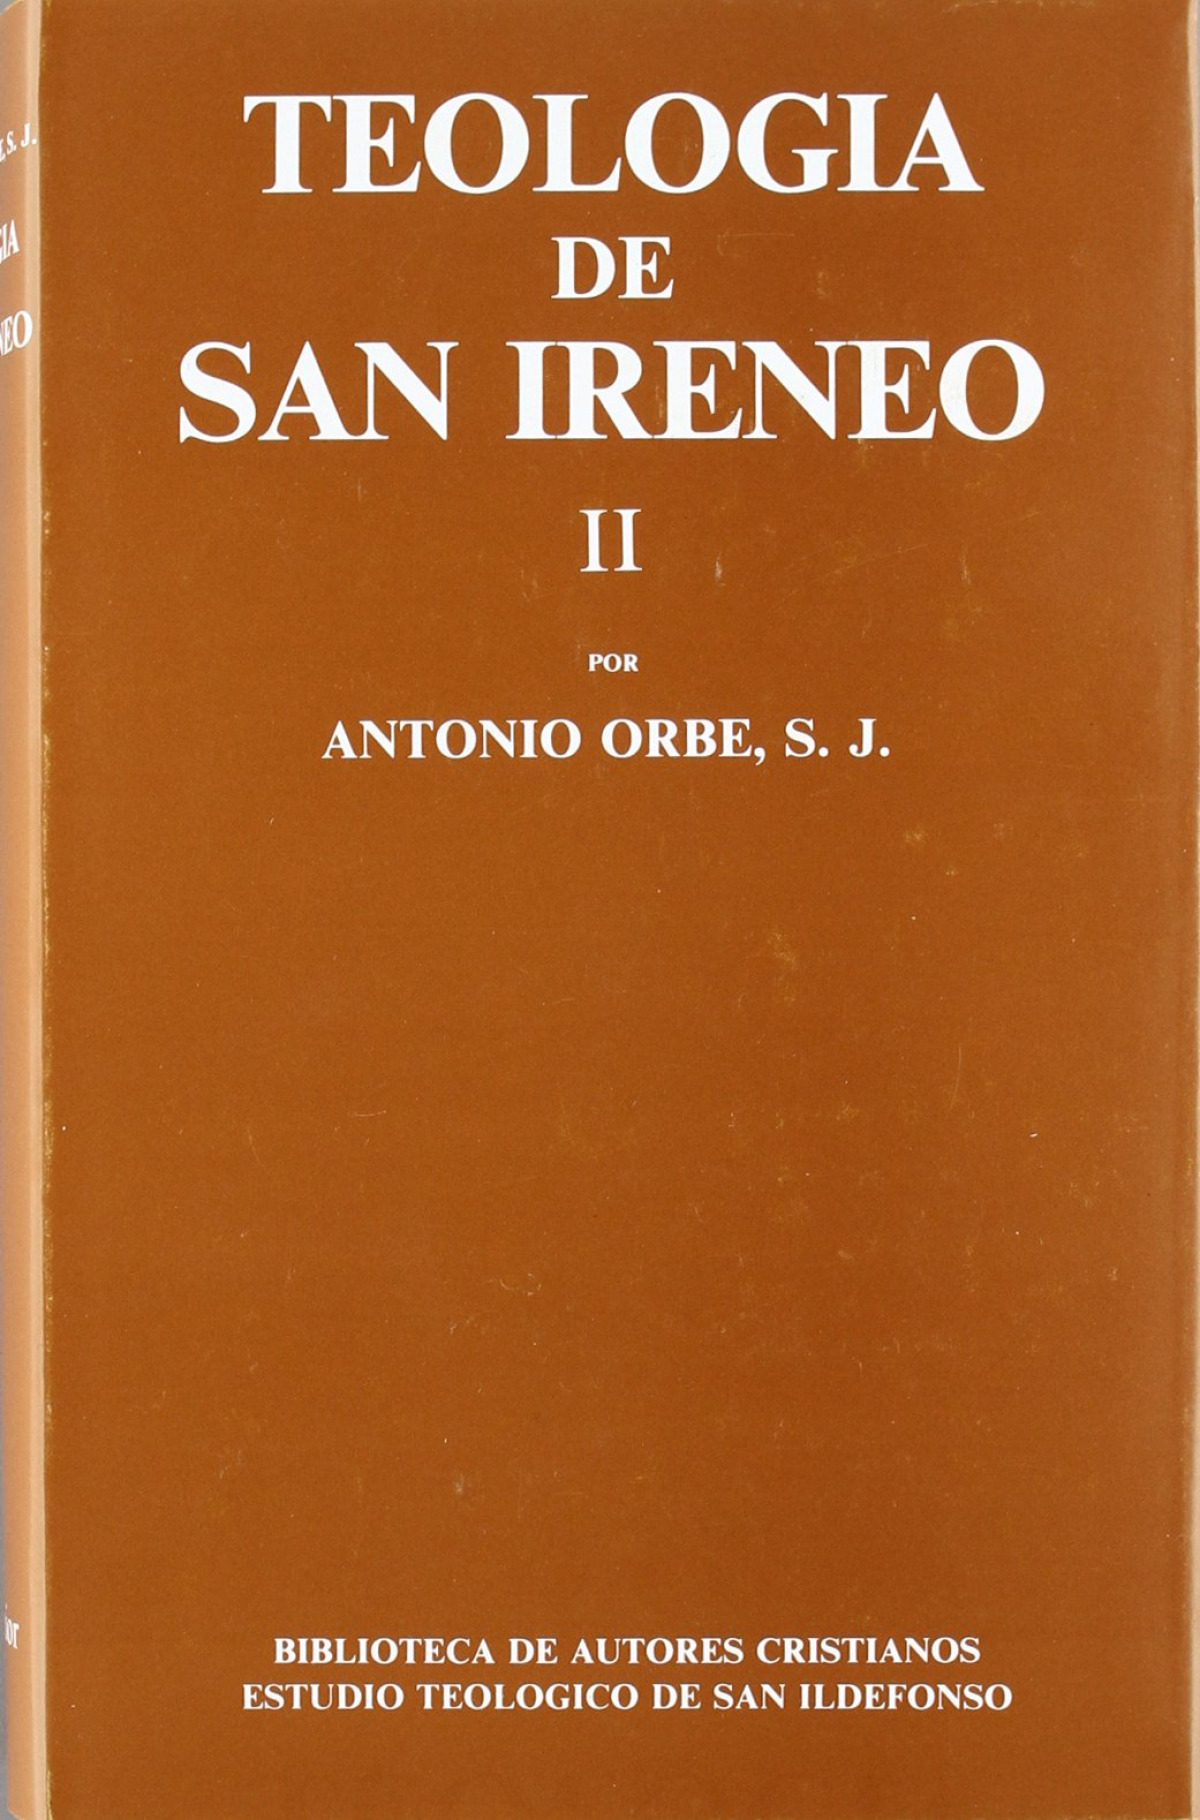 Teología de San Ireneo.II: Comentario al libro V del Adversus haereses - Orbe, Antonio